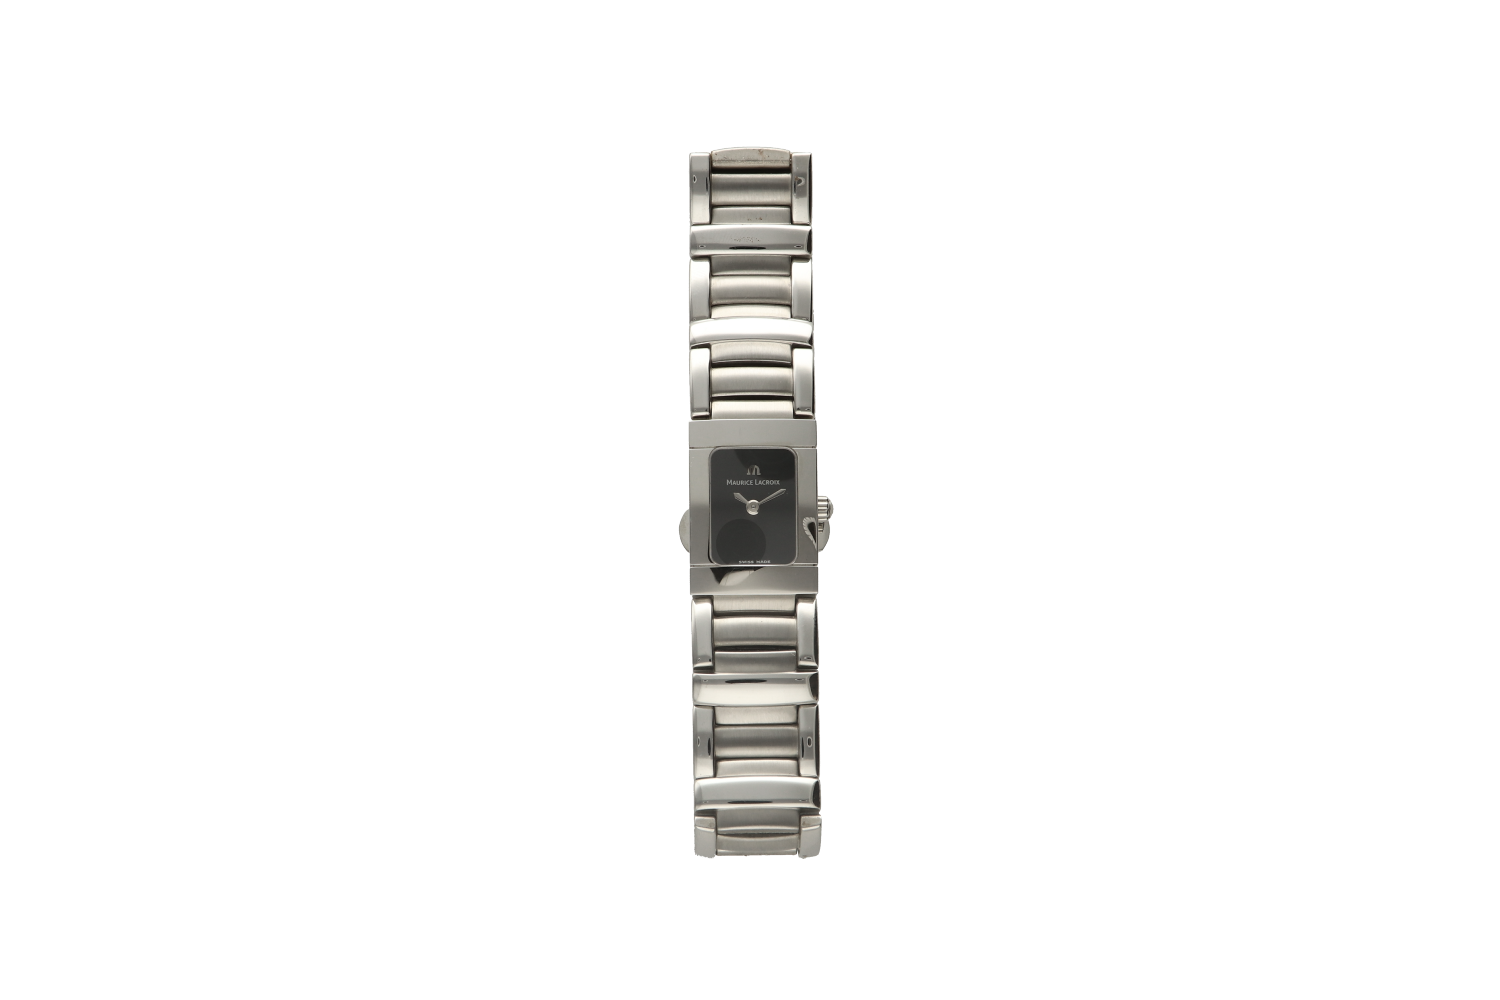 Ρολόι γυναικείο MAURICE LACROIX, MIRROS 32823 6703/1 με φαρδύ μπρασελέ και μαύρο καντράν S/N AC64299